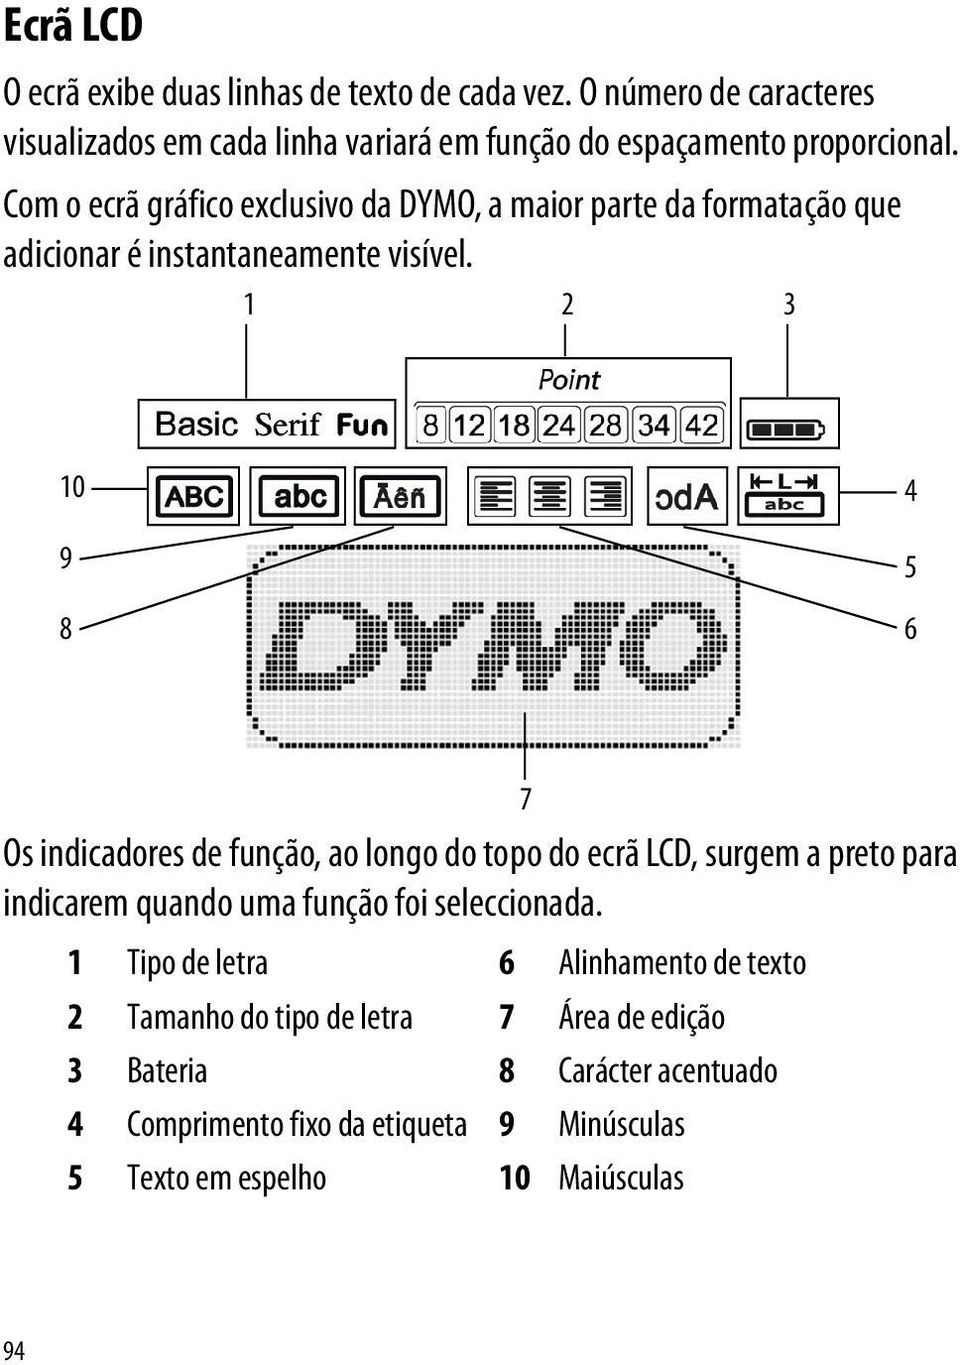 Com o ecrã gráfico exclusivo da DYMO, a maior parte da formatação que adicionar é instantaneamente visível.